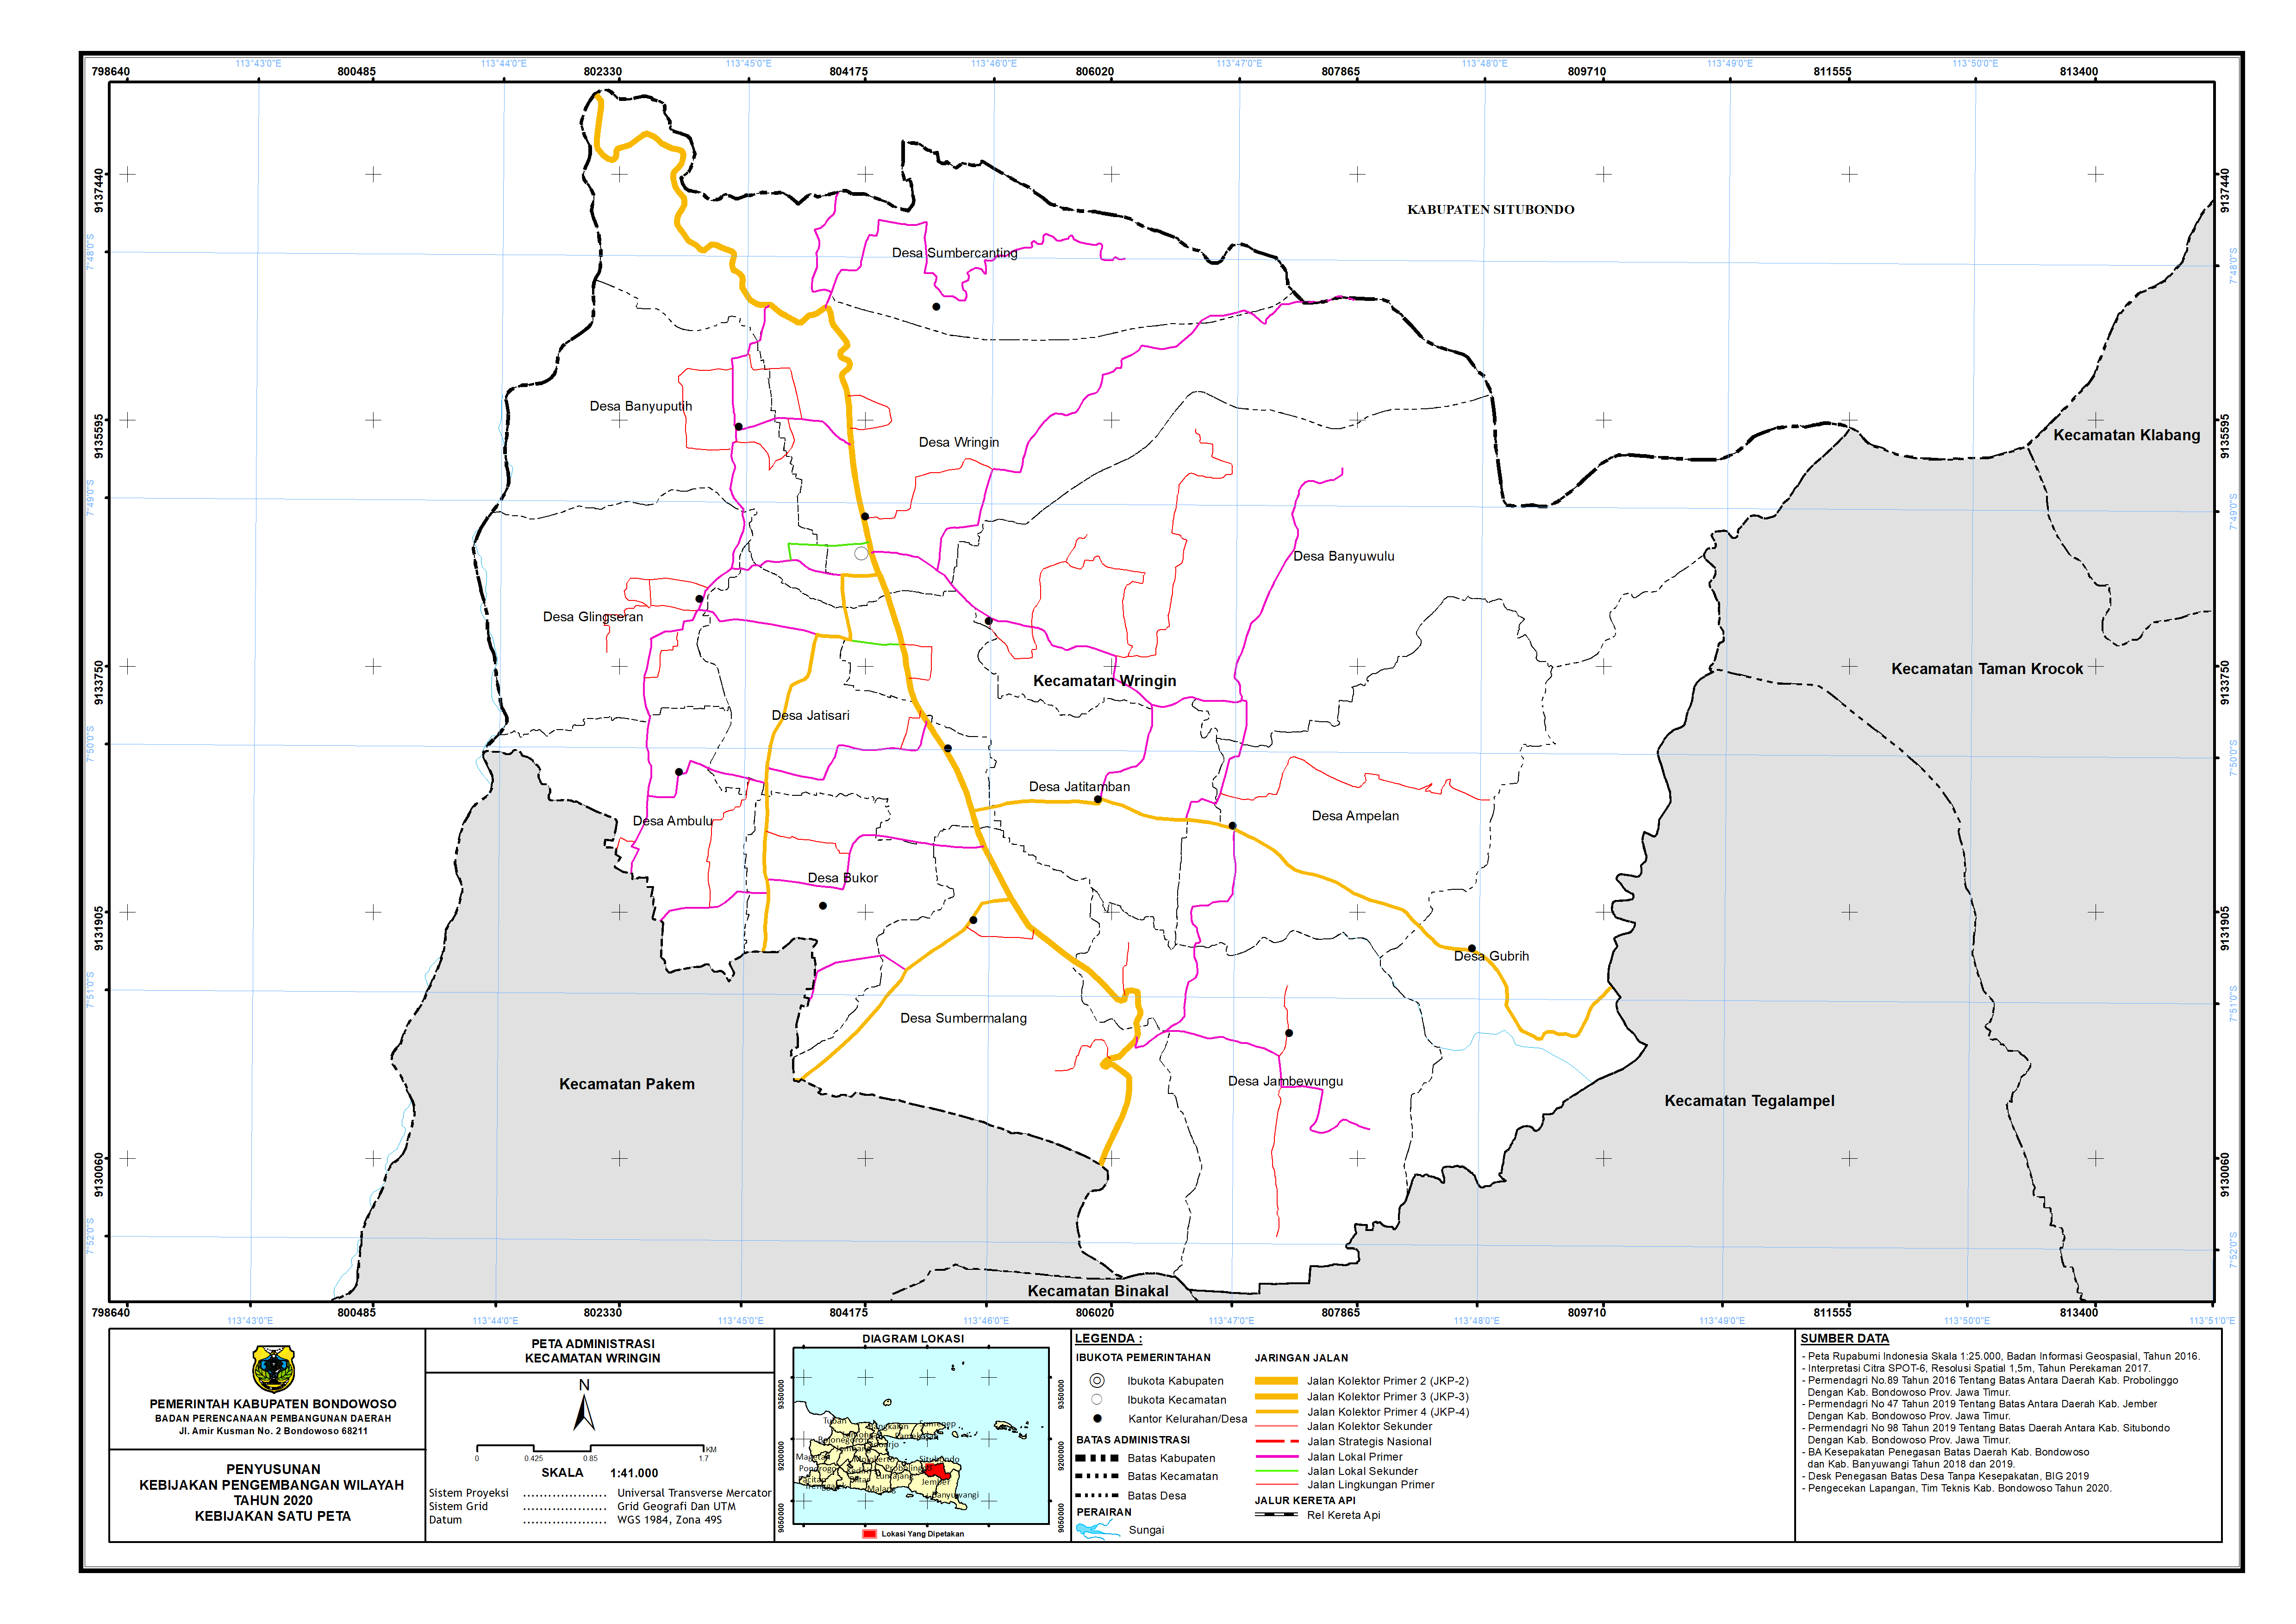 Peta Batas Administrasi Kecamatan Wringin.png